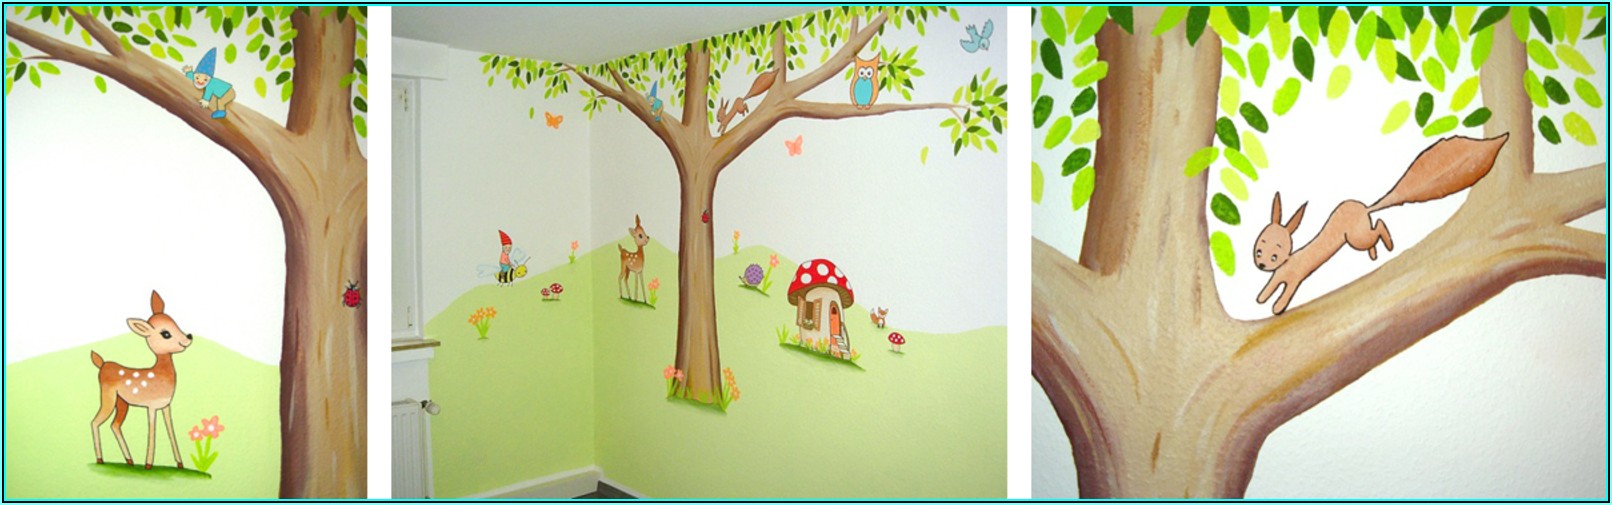 Schablonen Für Wandmalerei Kinderzimmer